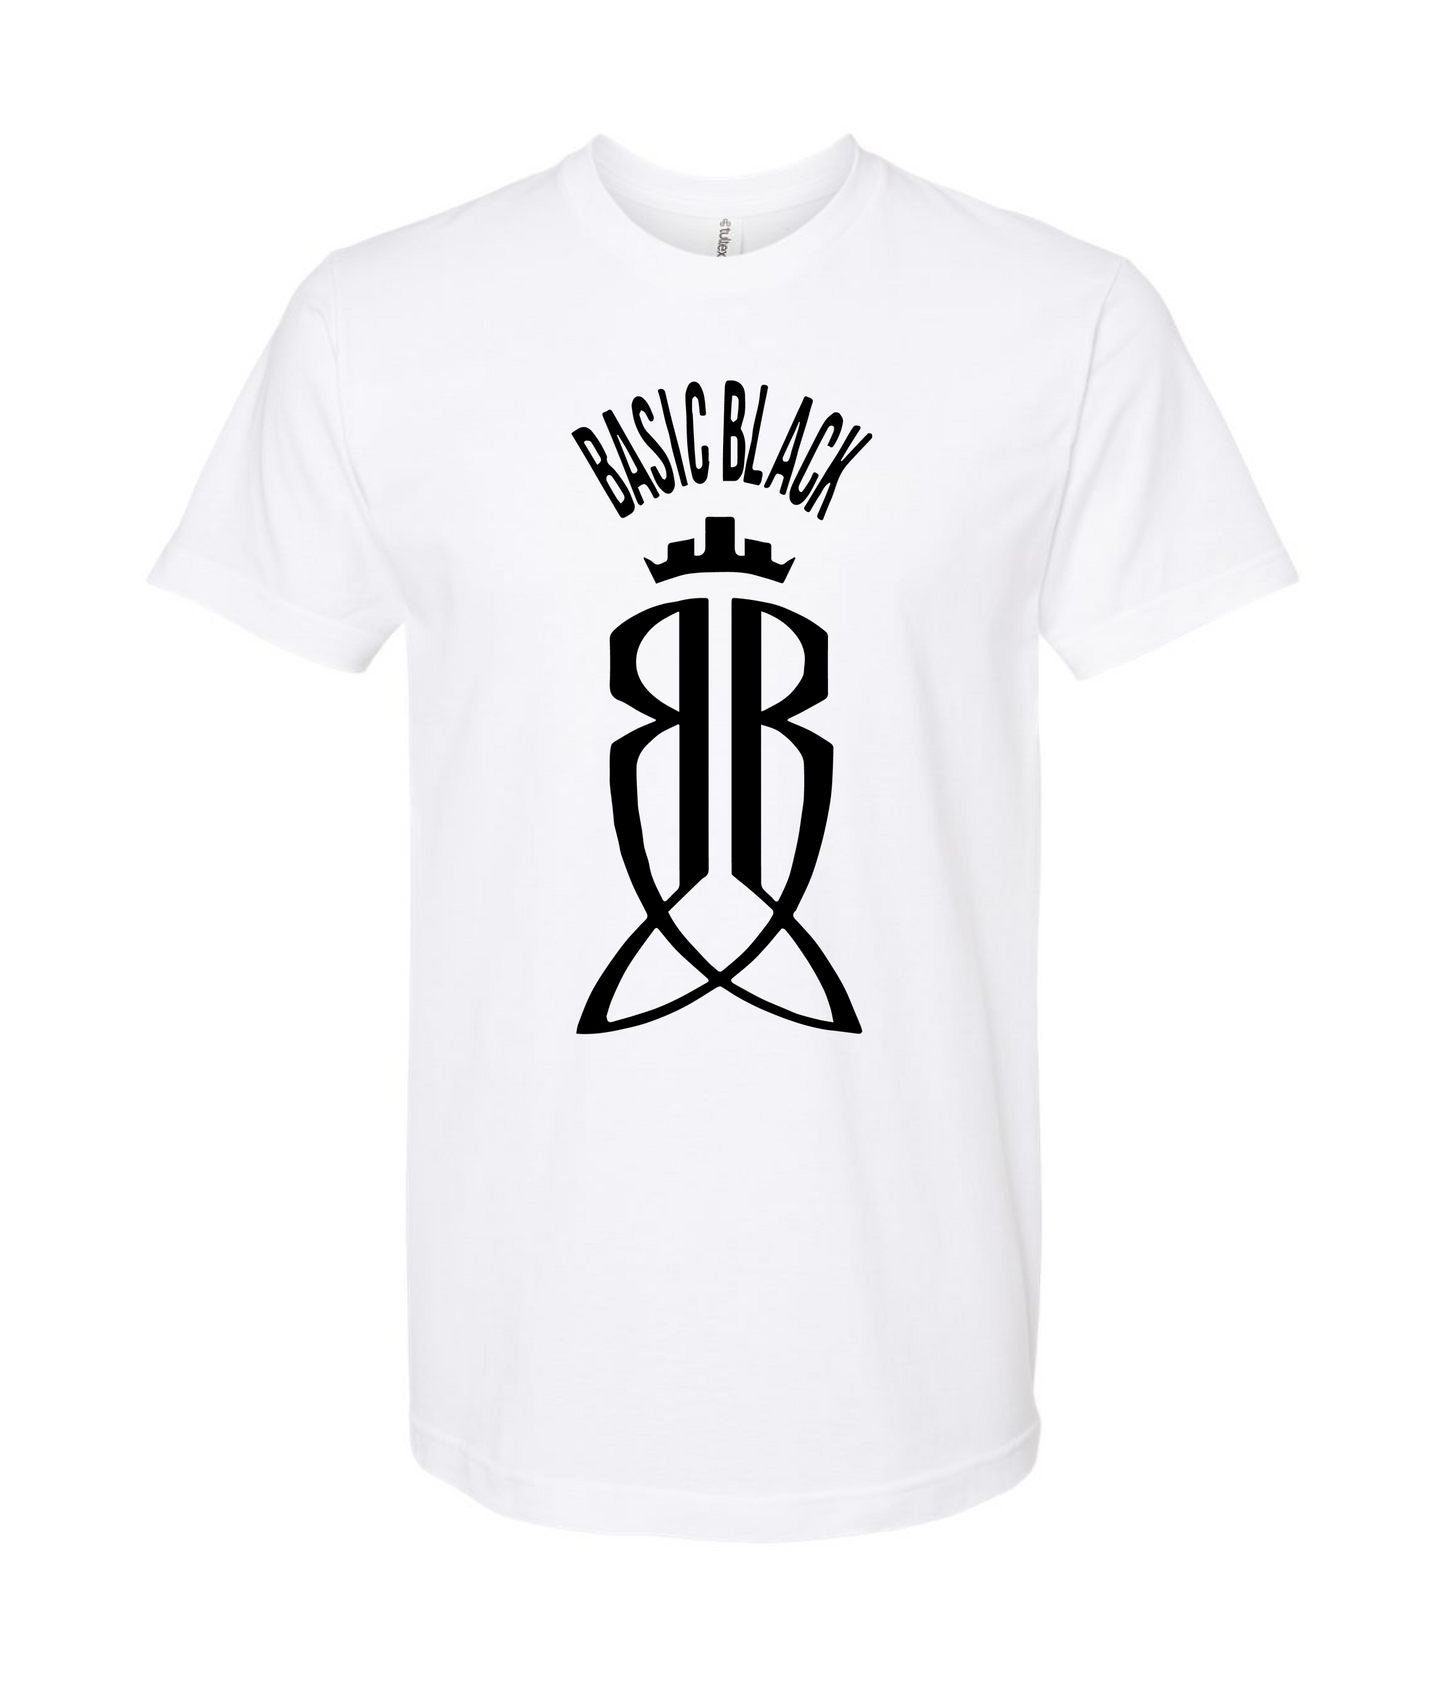 Basic Black - Logo - White T-Shirt